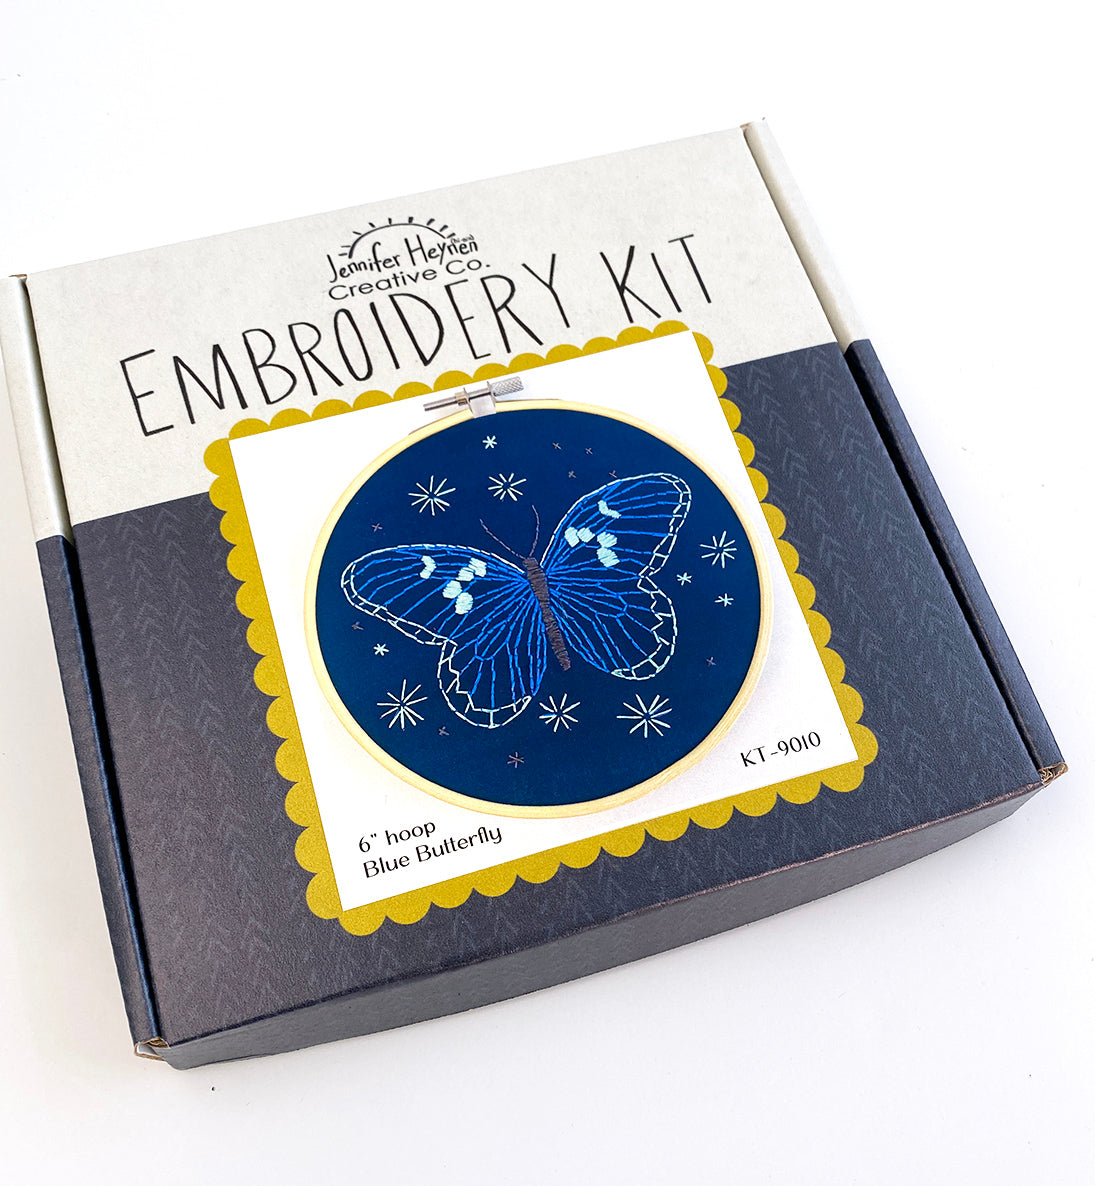 Blue Butterfly Embroidery Kit – Jennifer Heynen Creative Co.